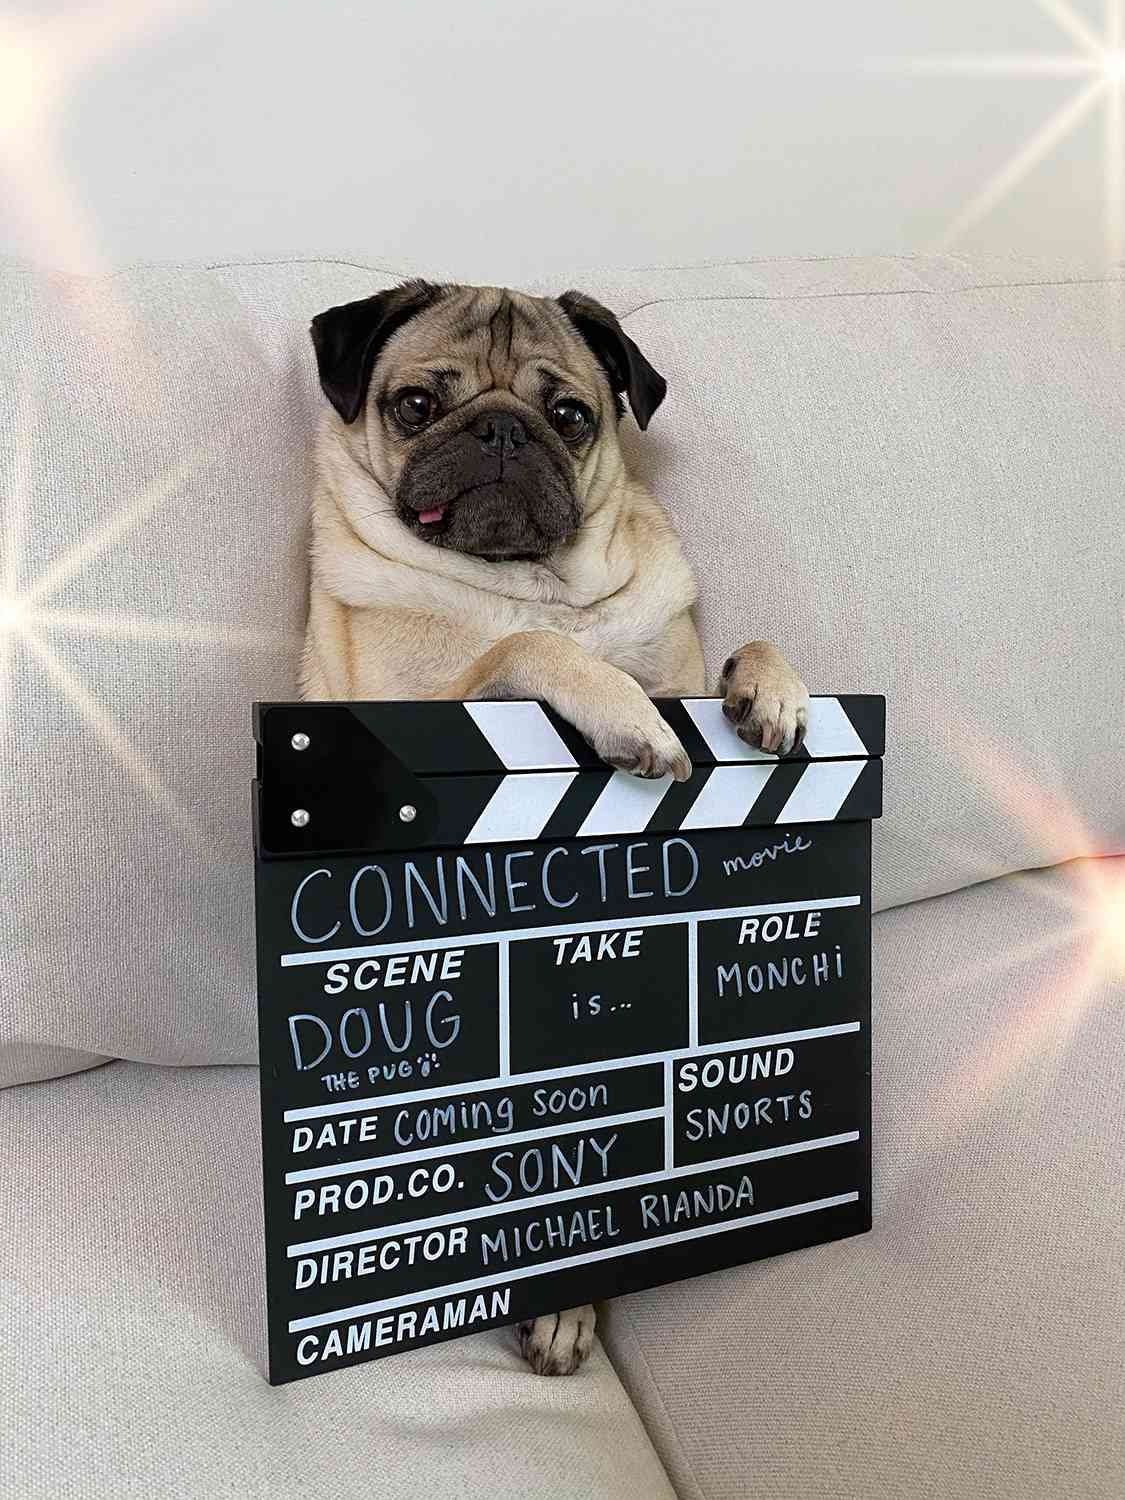 doug the pug movie role